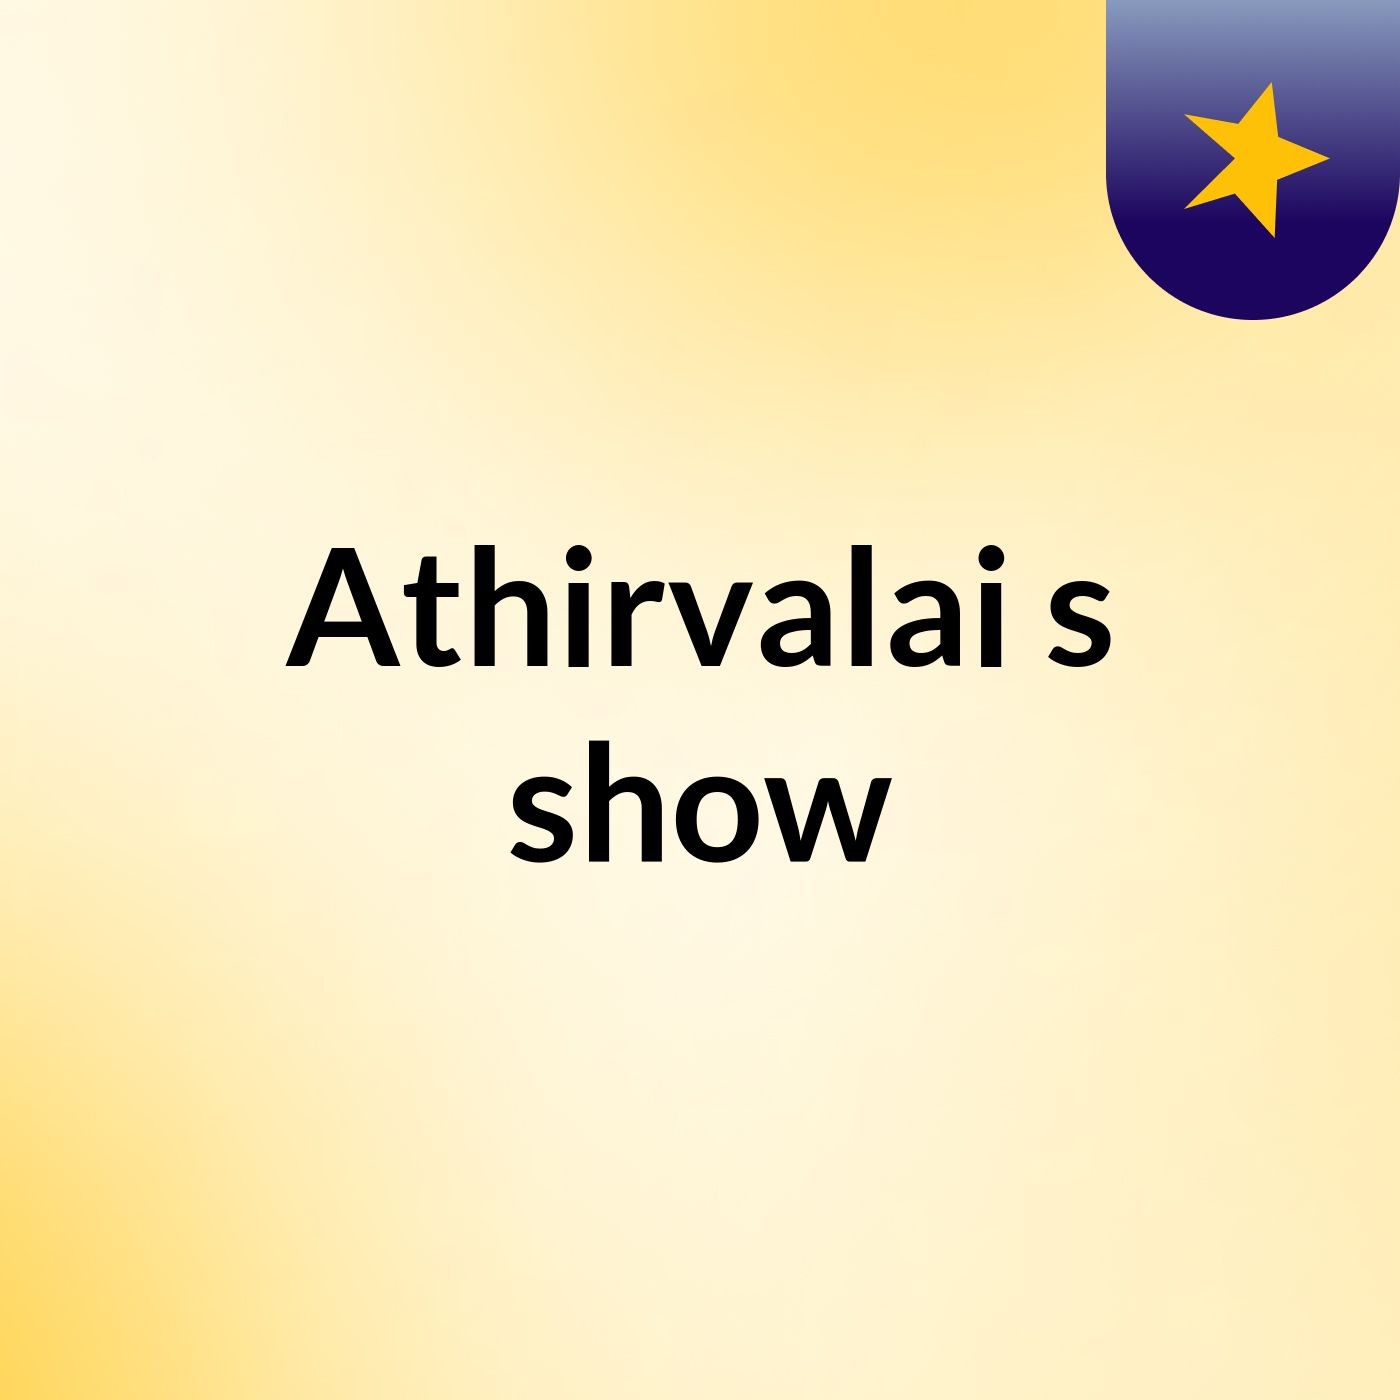 Athirvalai's show